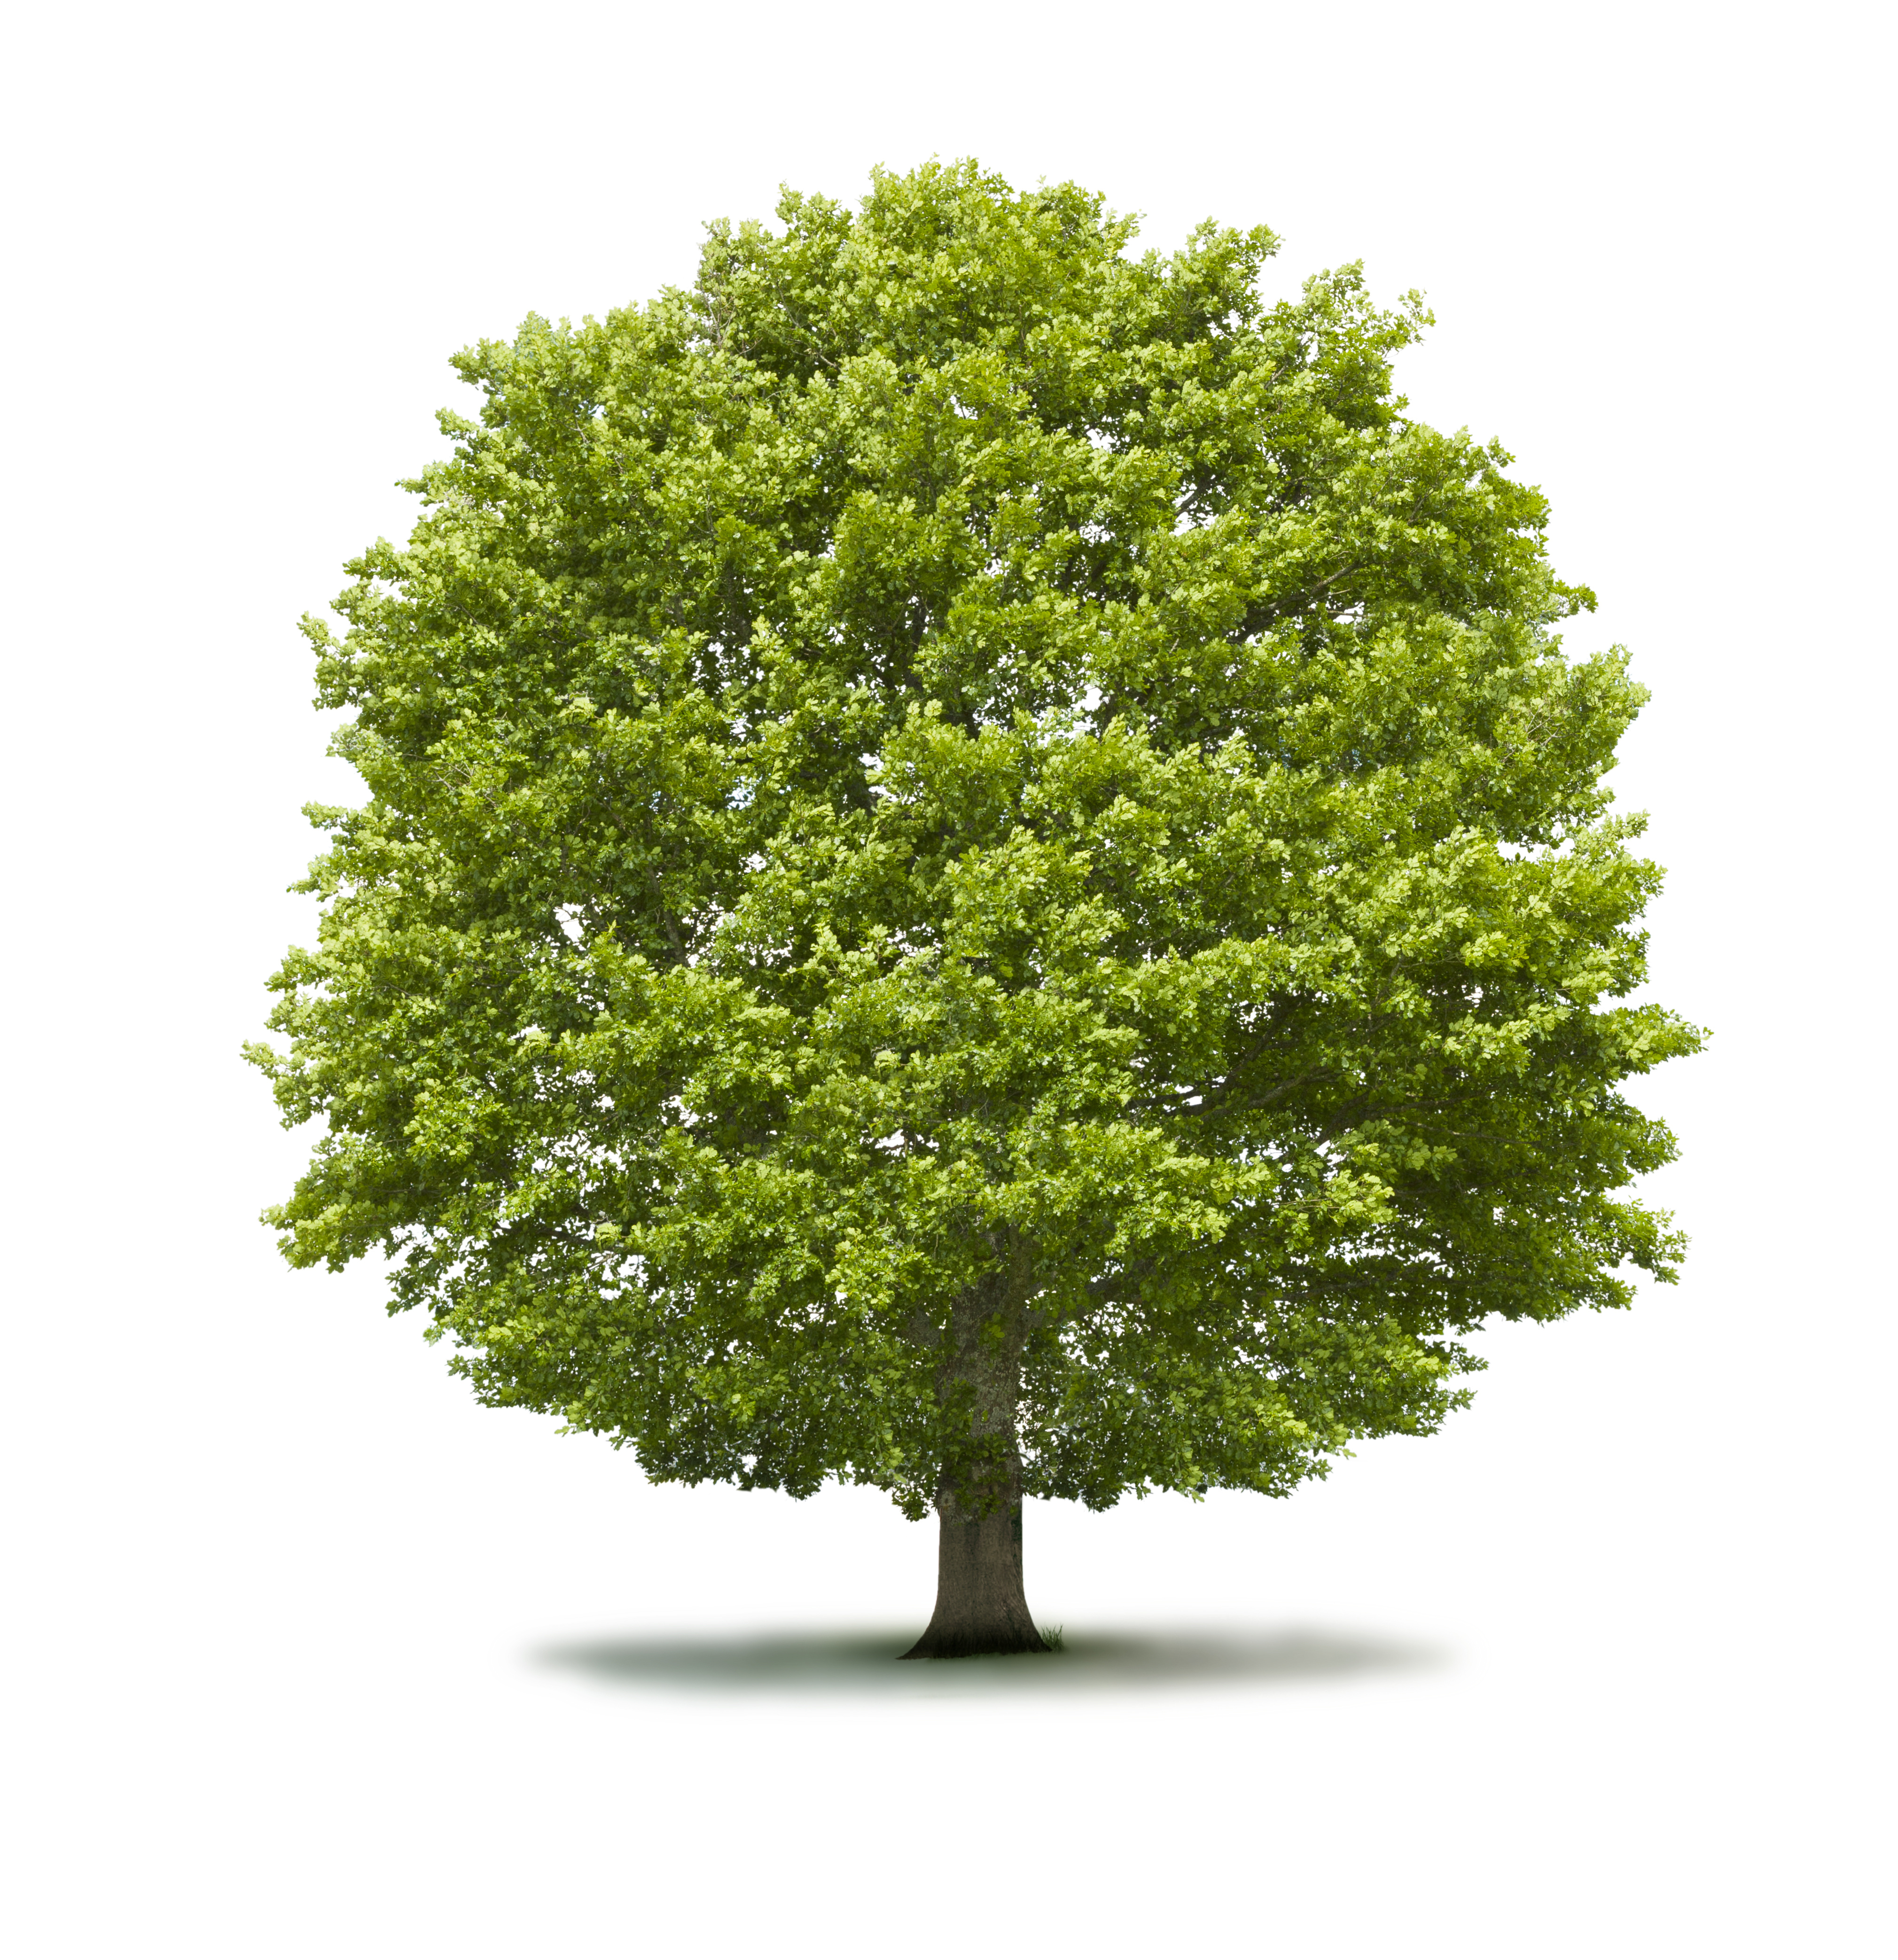 ESG Kriterien - Bild von Baum